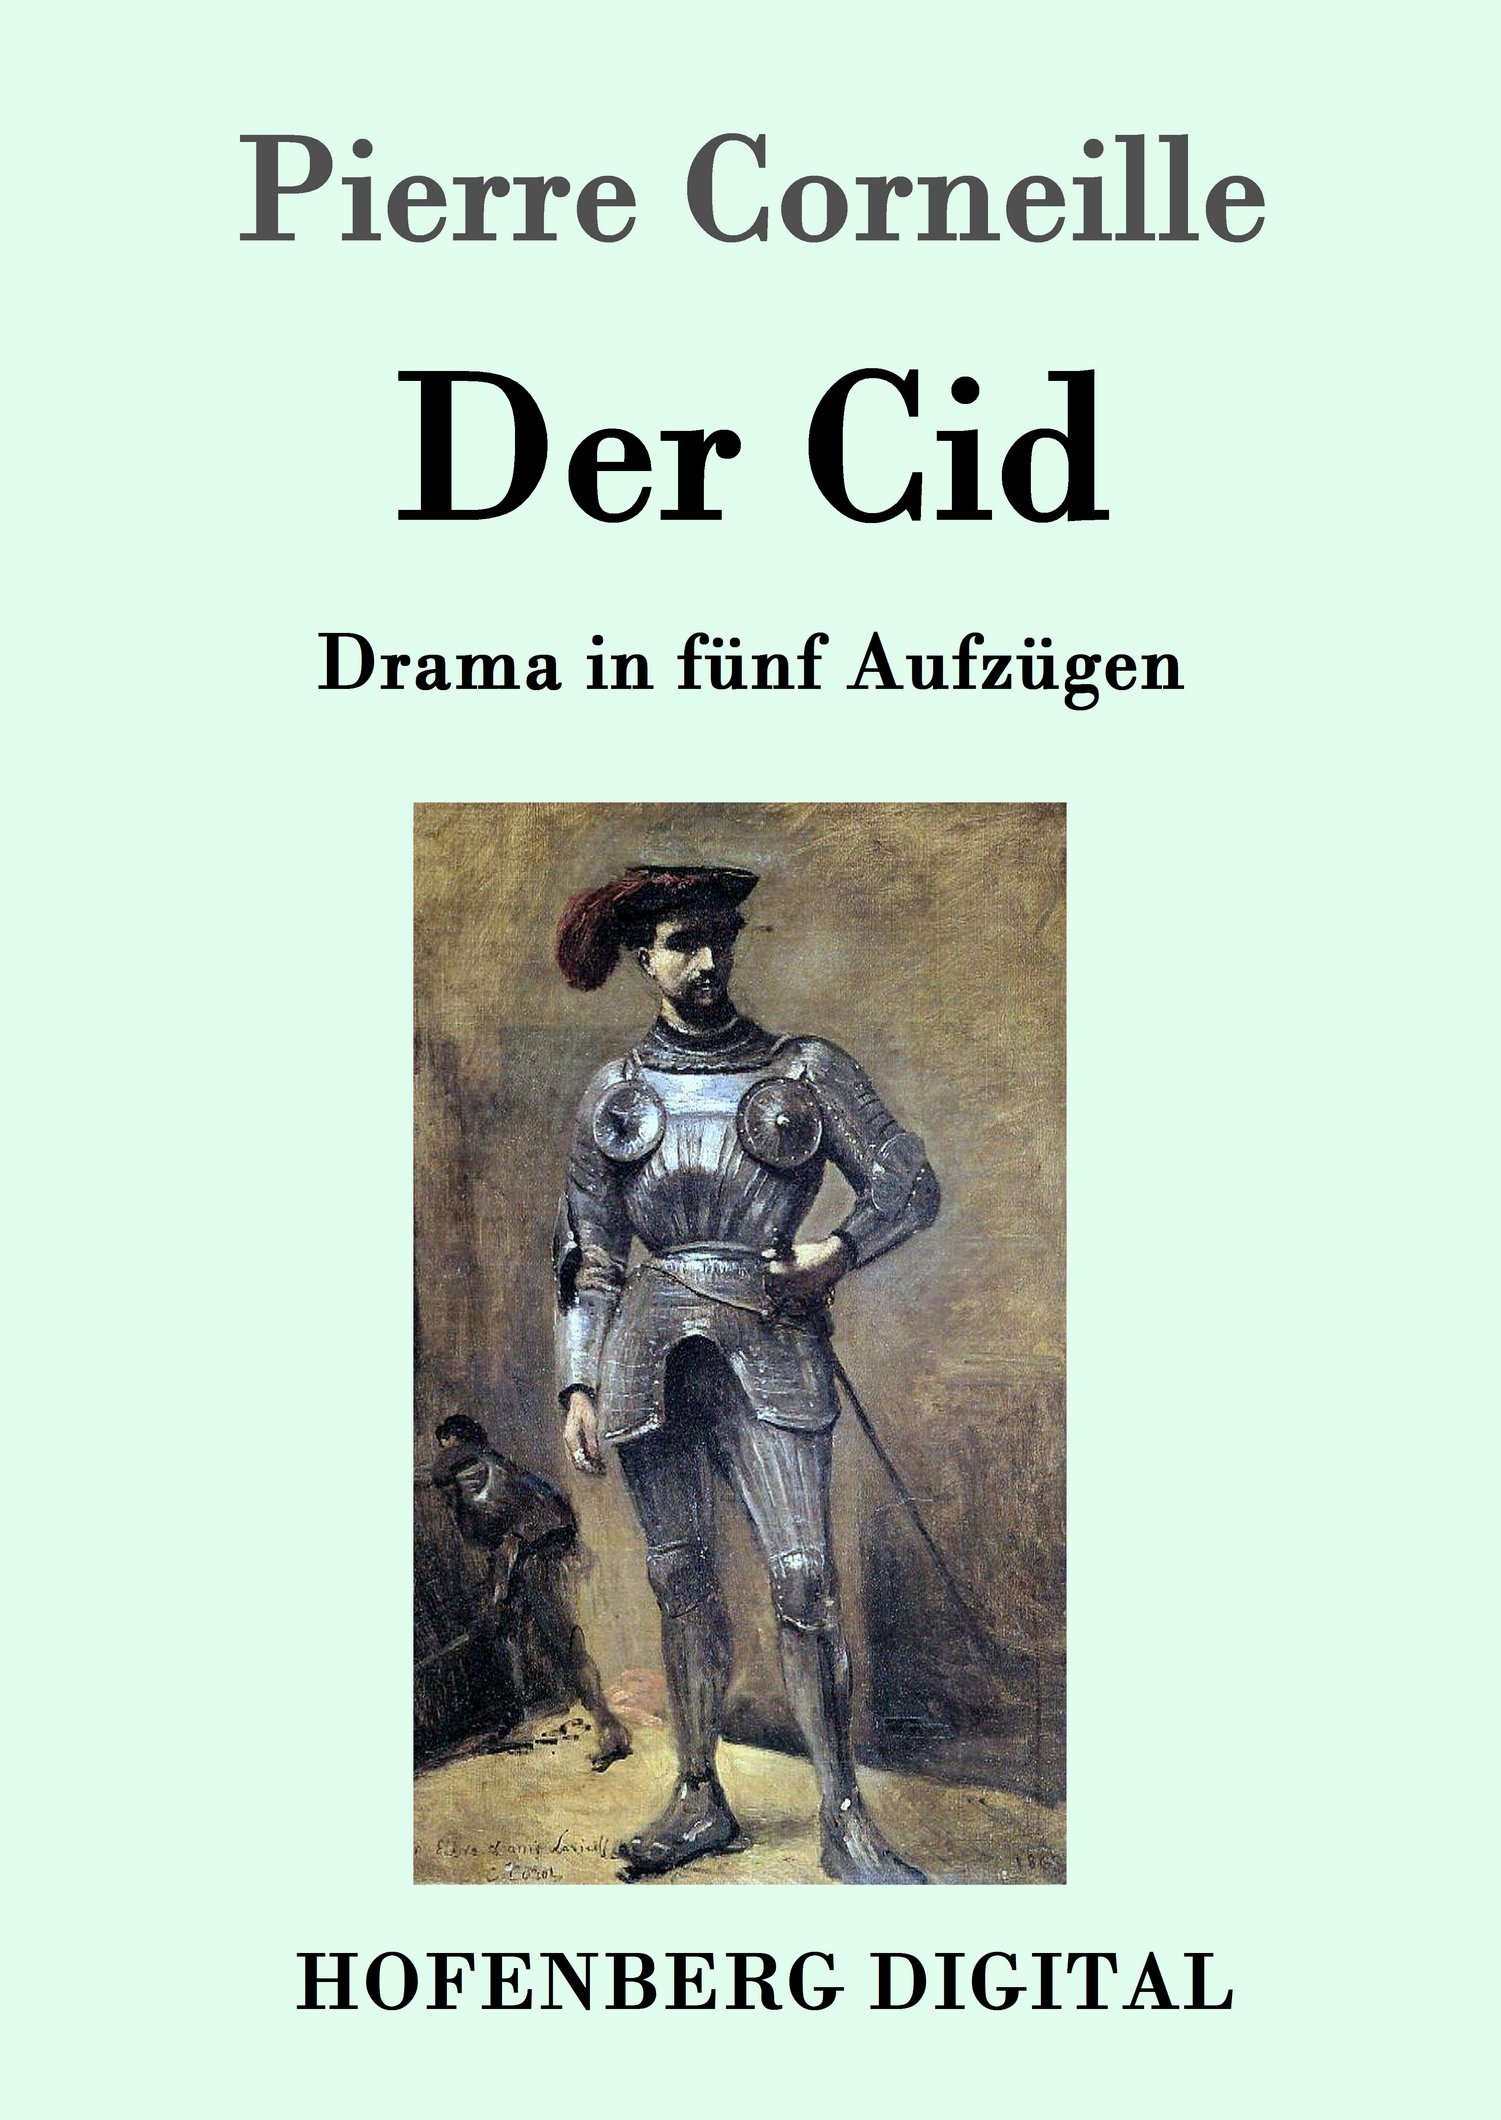 Pierre Corneille: Der Cid